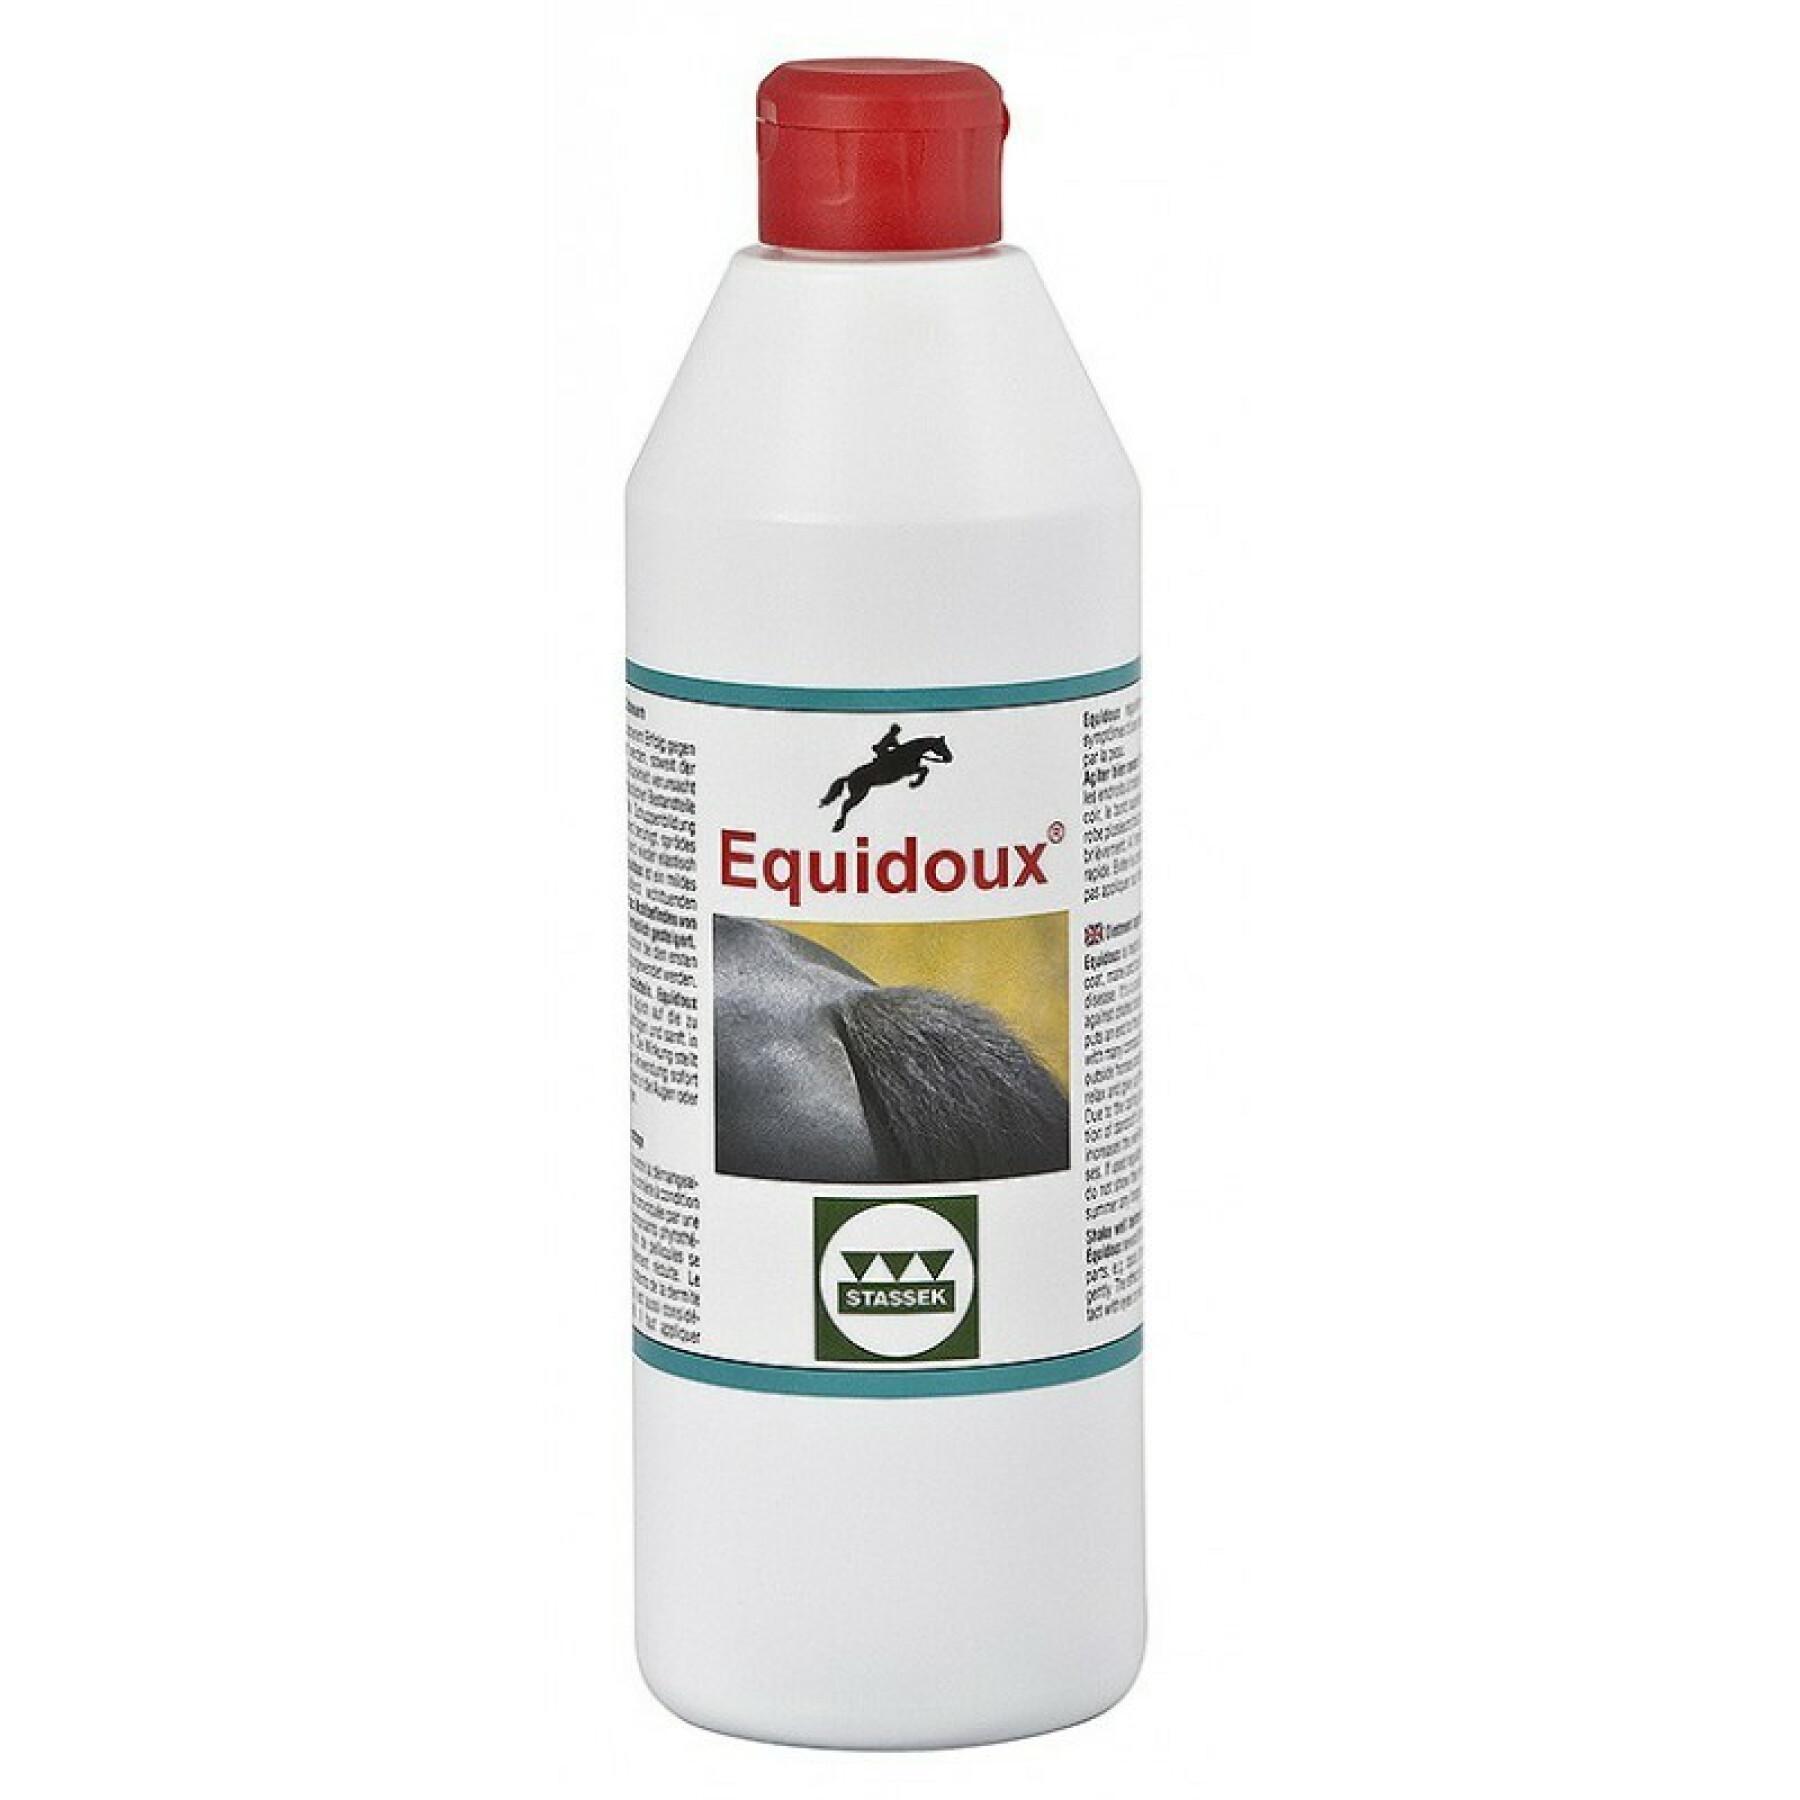 Kleurstof tegen staartkrabben voor paarden Stassek Equidoux 500 ml